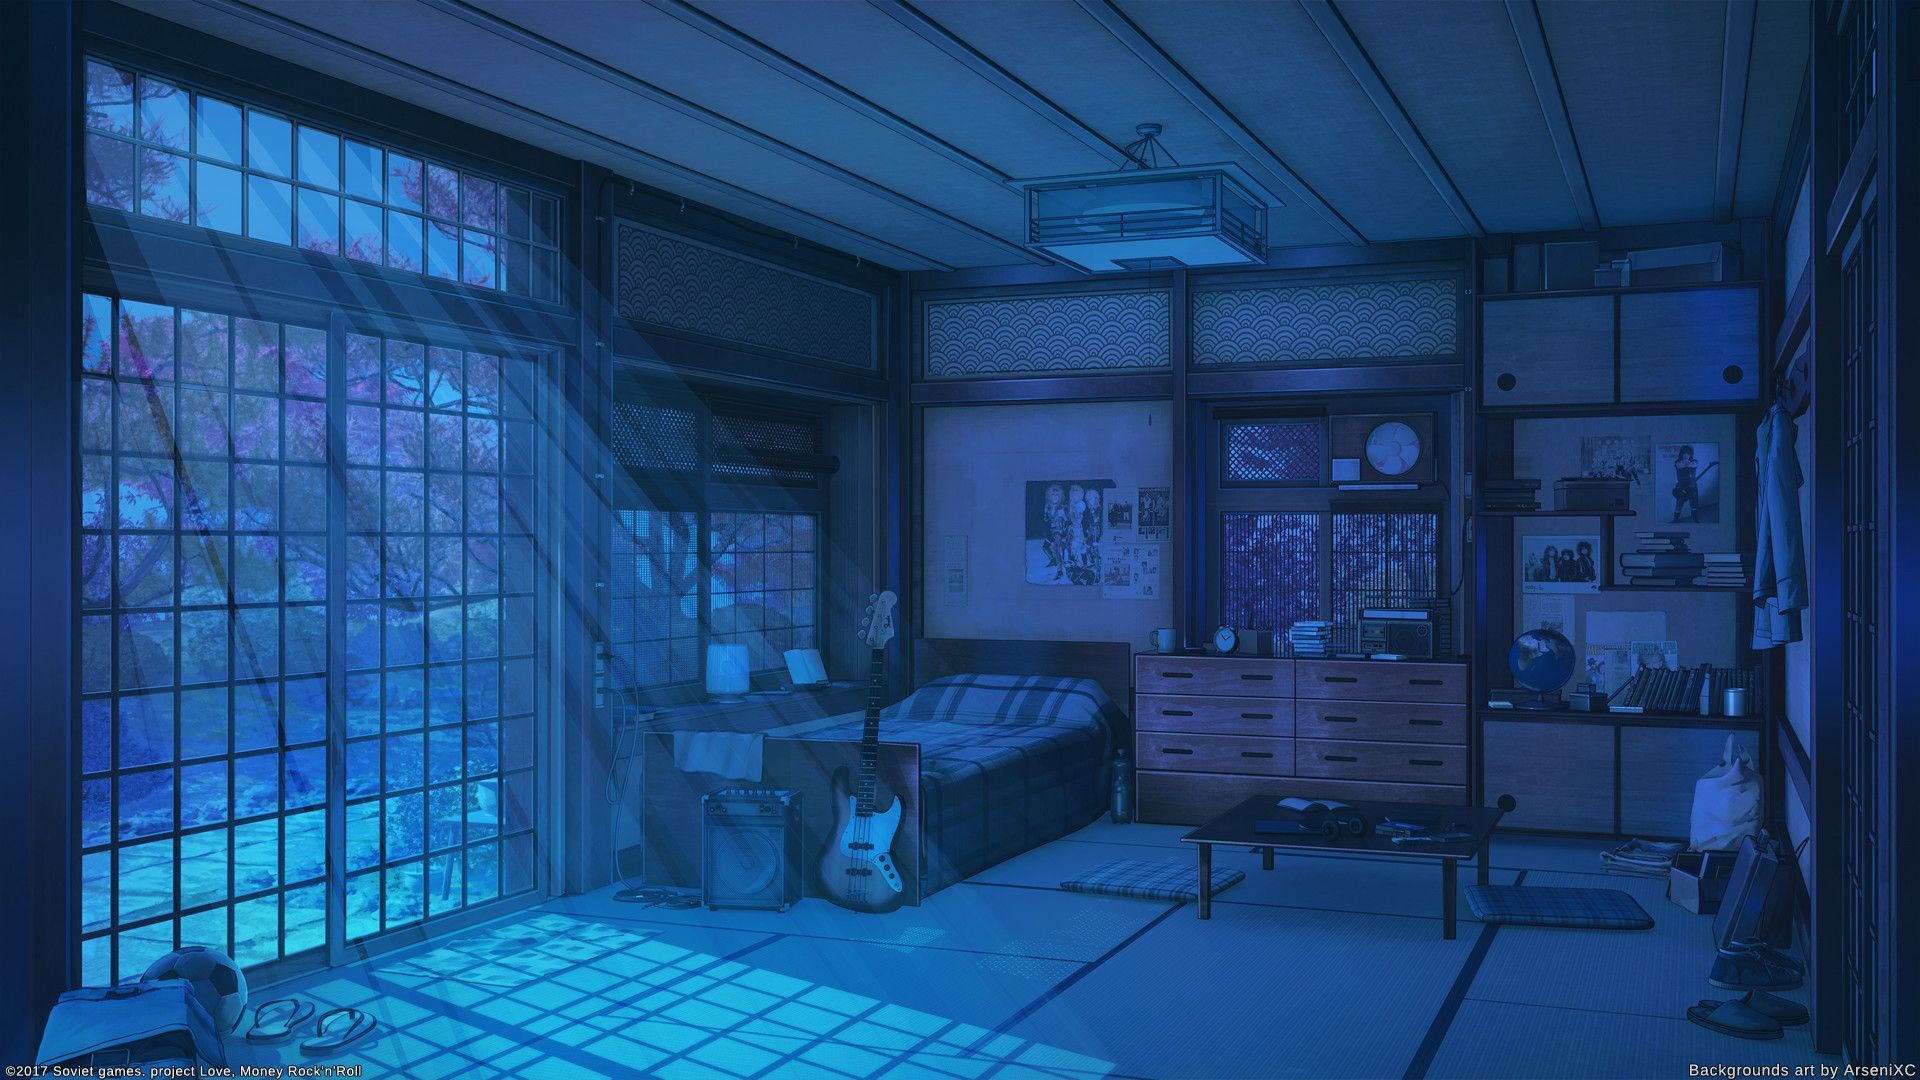 Không gian tối thích hợp cho những người yêu thích sự bí ẩn và đầy lãng mạn. Với hình nền phòng anime tối, bạn sẽ được hòa mình vào không gian ẩn dật và đầy thú vị, trải nghiệm cảm giác thăng hoa không lối thoát.